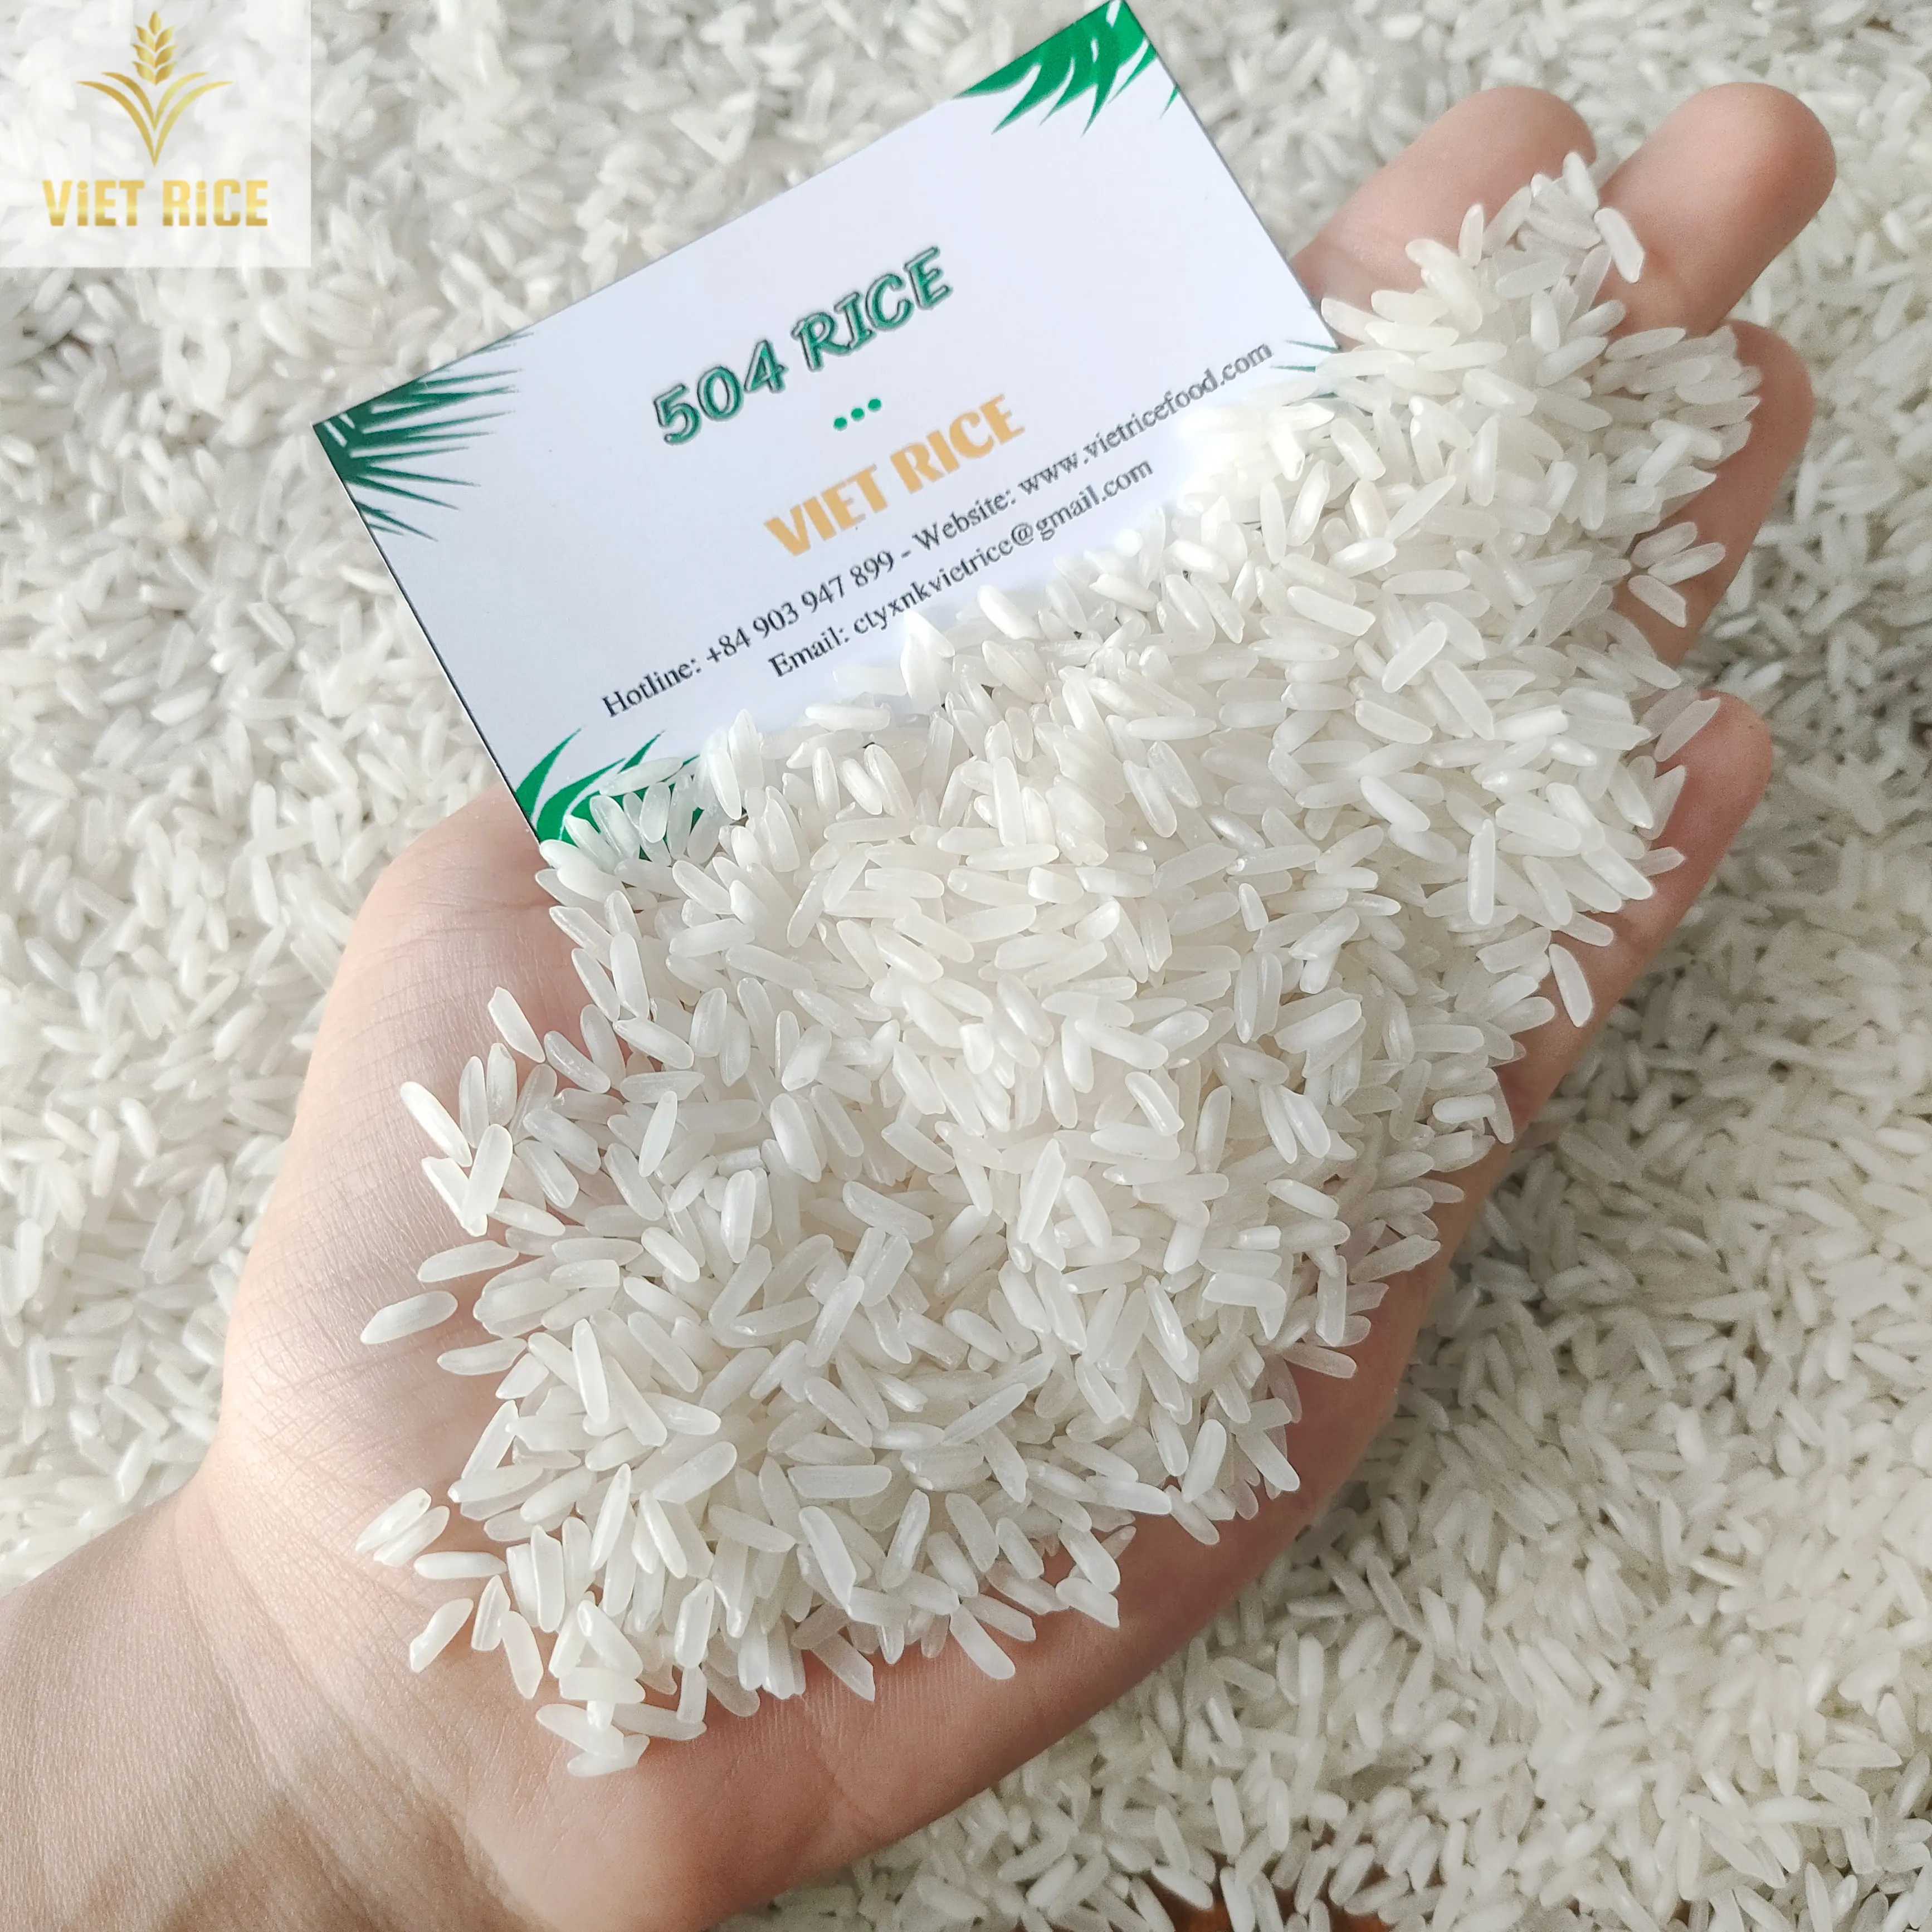 Riso vietnamita (miglior fornitore, riso 504) sia a livello nazionale che a livello internazionale viene venduto riso bianco di qualità e quantità superiori